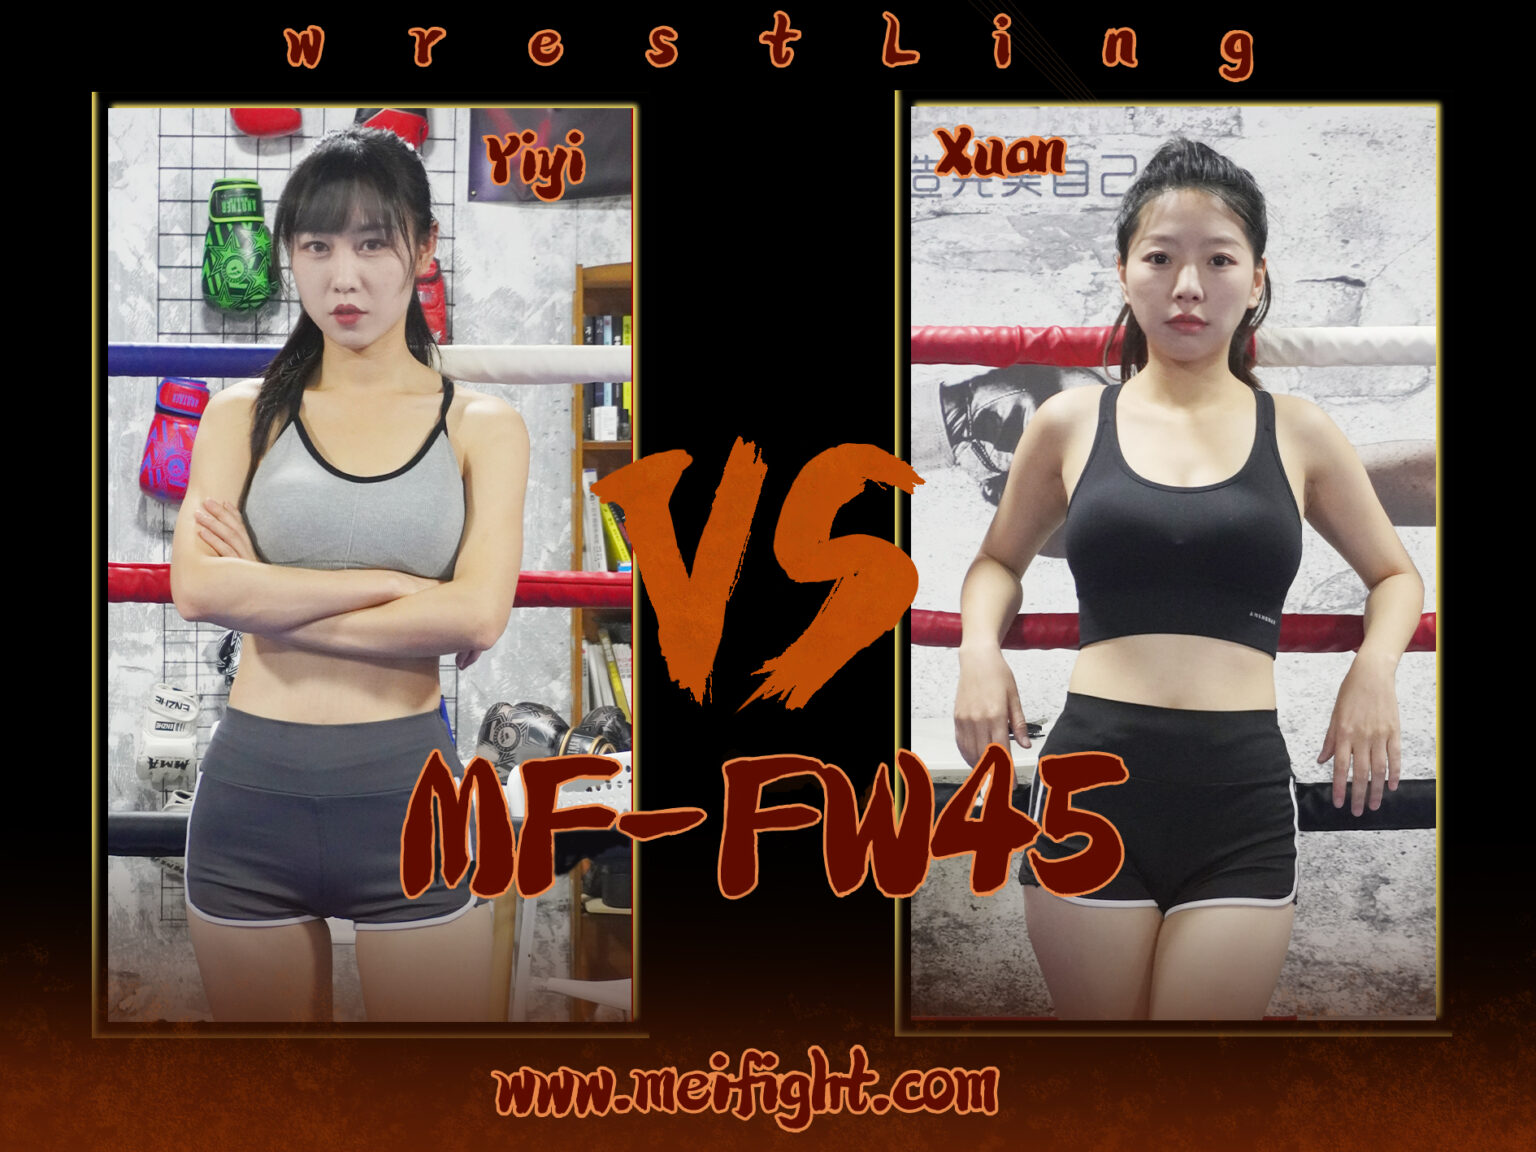 MF-FW45-Yiyi VS Xuan